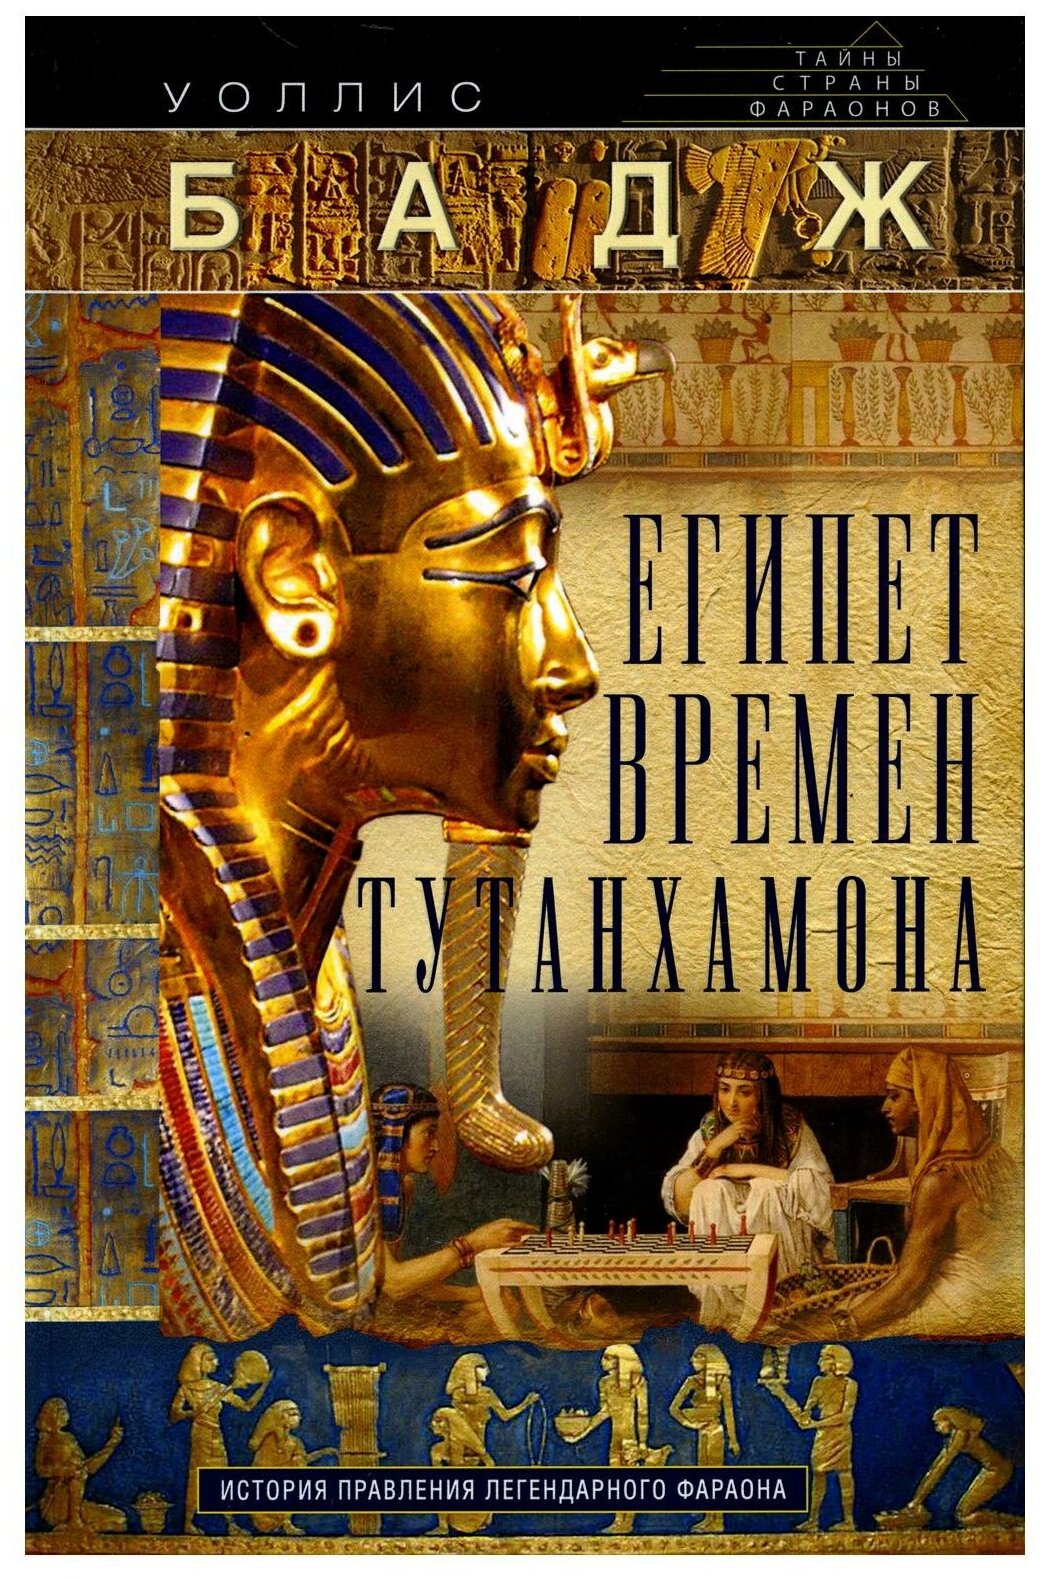 Египет времен Тутанхамона. История правления легендарного фараона - фото №1